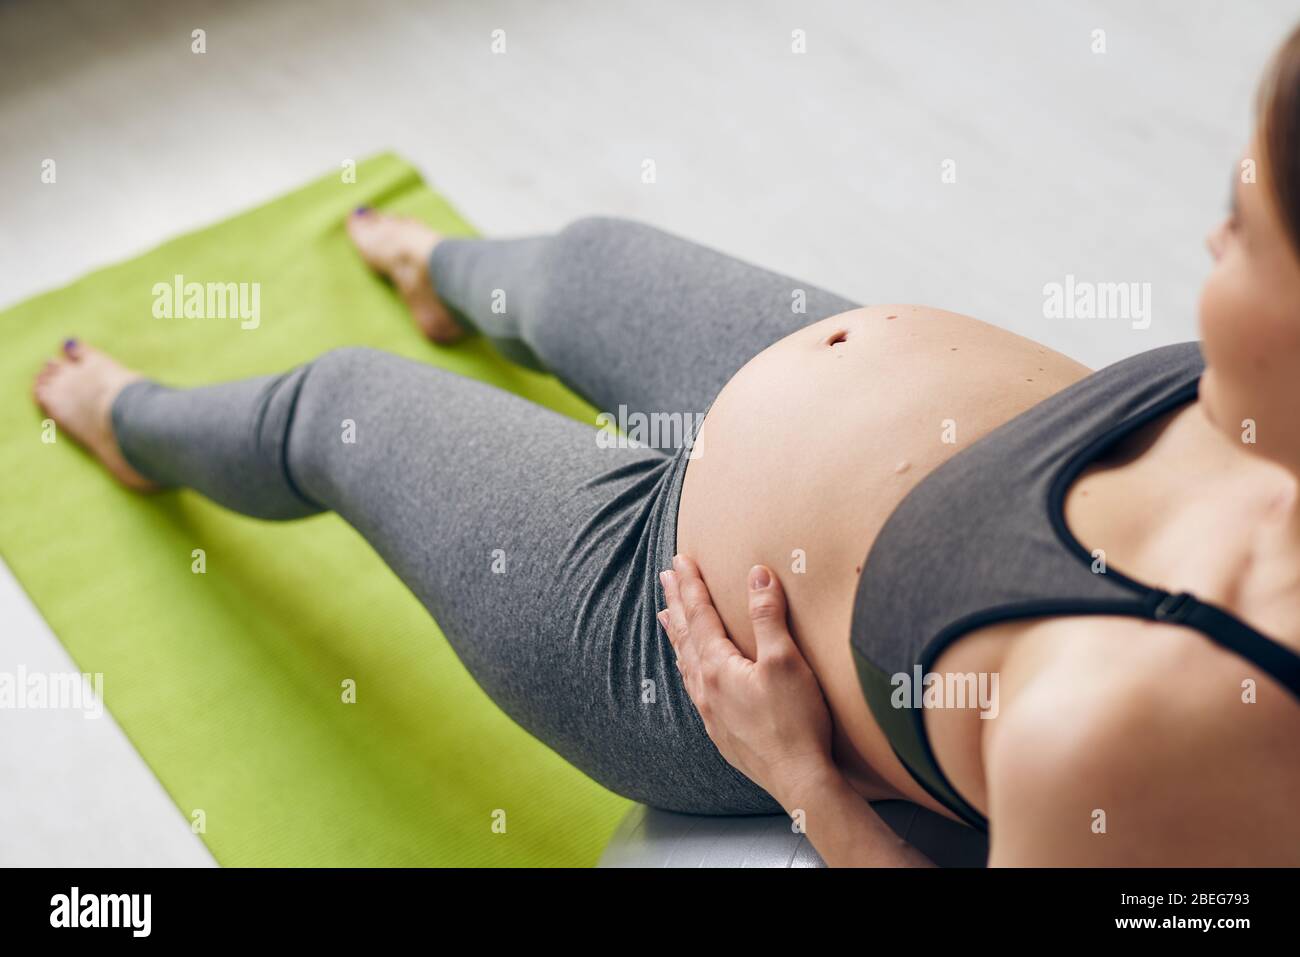 Vista superior de una mujer embarazada apoyada en una pelota de yoga y haciendo ejercicio de relajación para la espalda Foto de stock